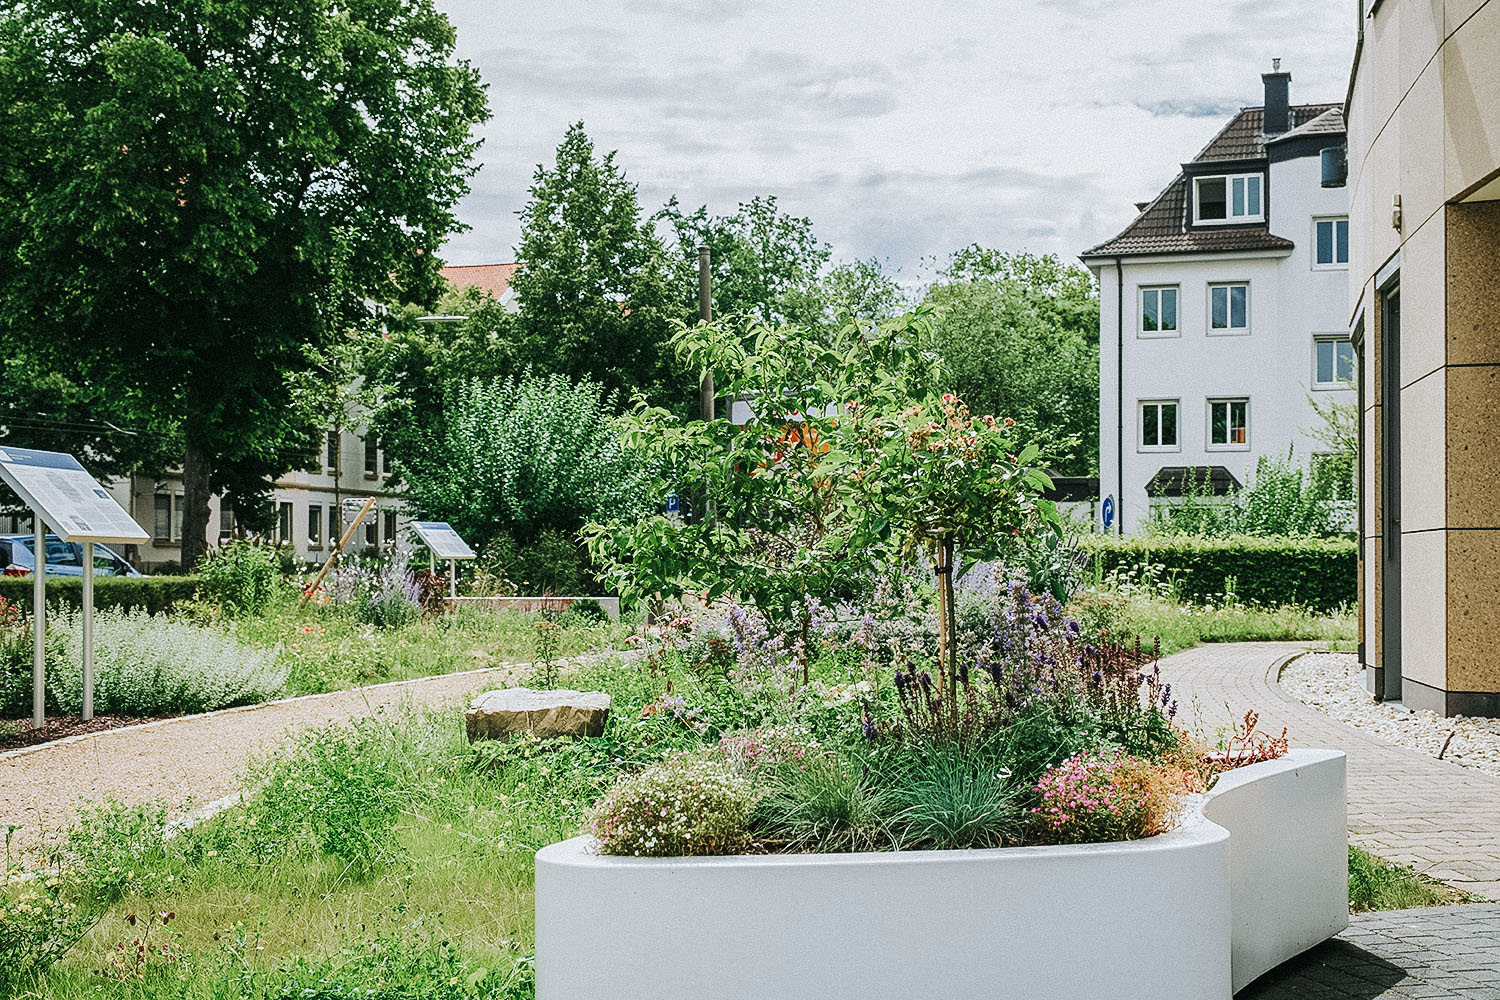 Ein Staudenbeet, Blumenkübel und Grünfläche mit bienenfreundlicher Bepflanzung in einer öffentlichen Gartenanlage in Bonn. Ein Gehweg aus Kies mit Informationstafeln führt zwischen den Beeten hindurch. 